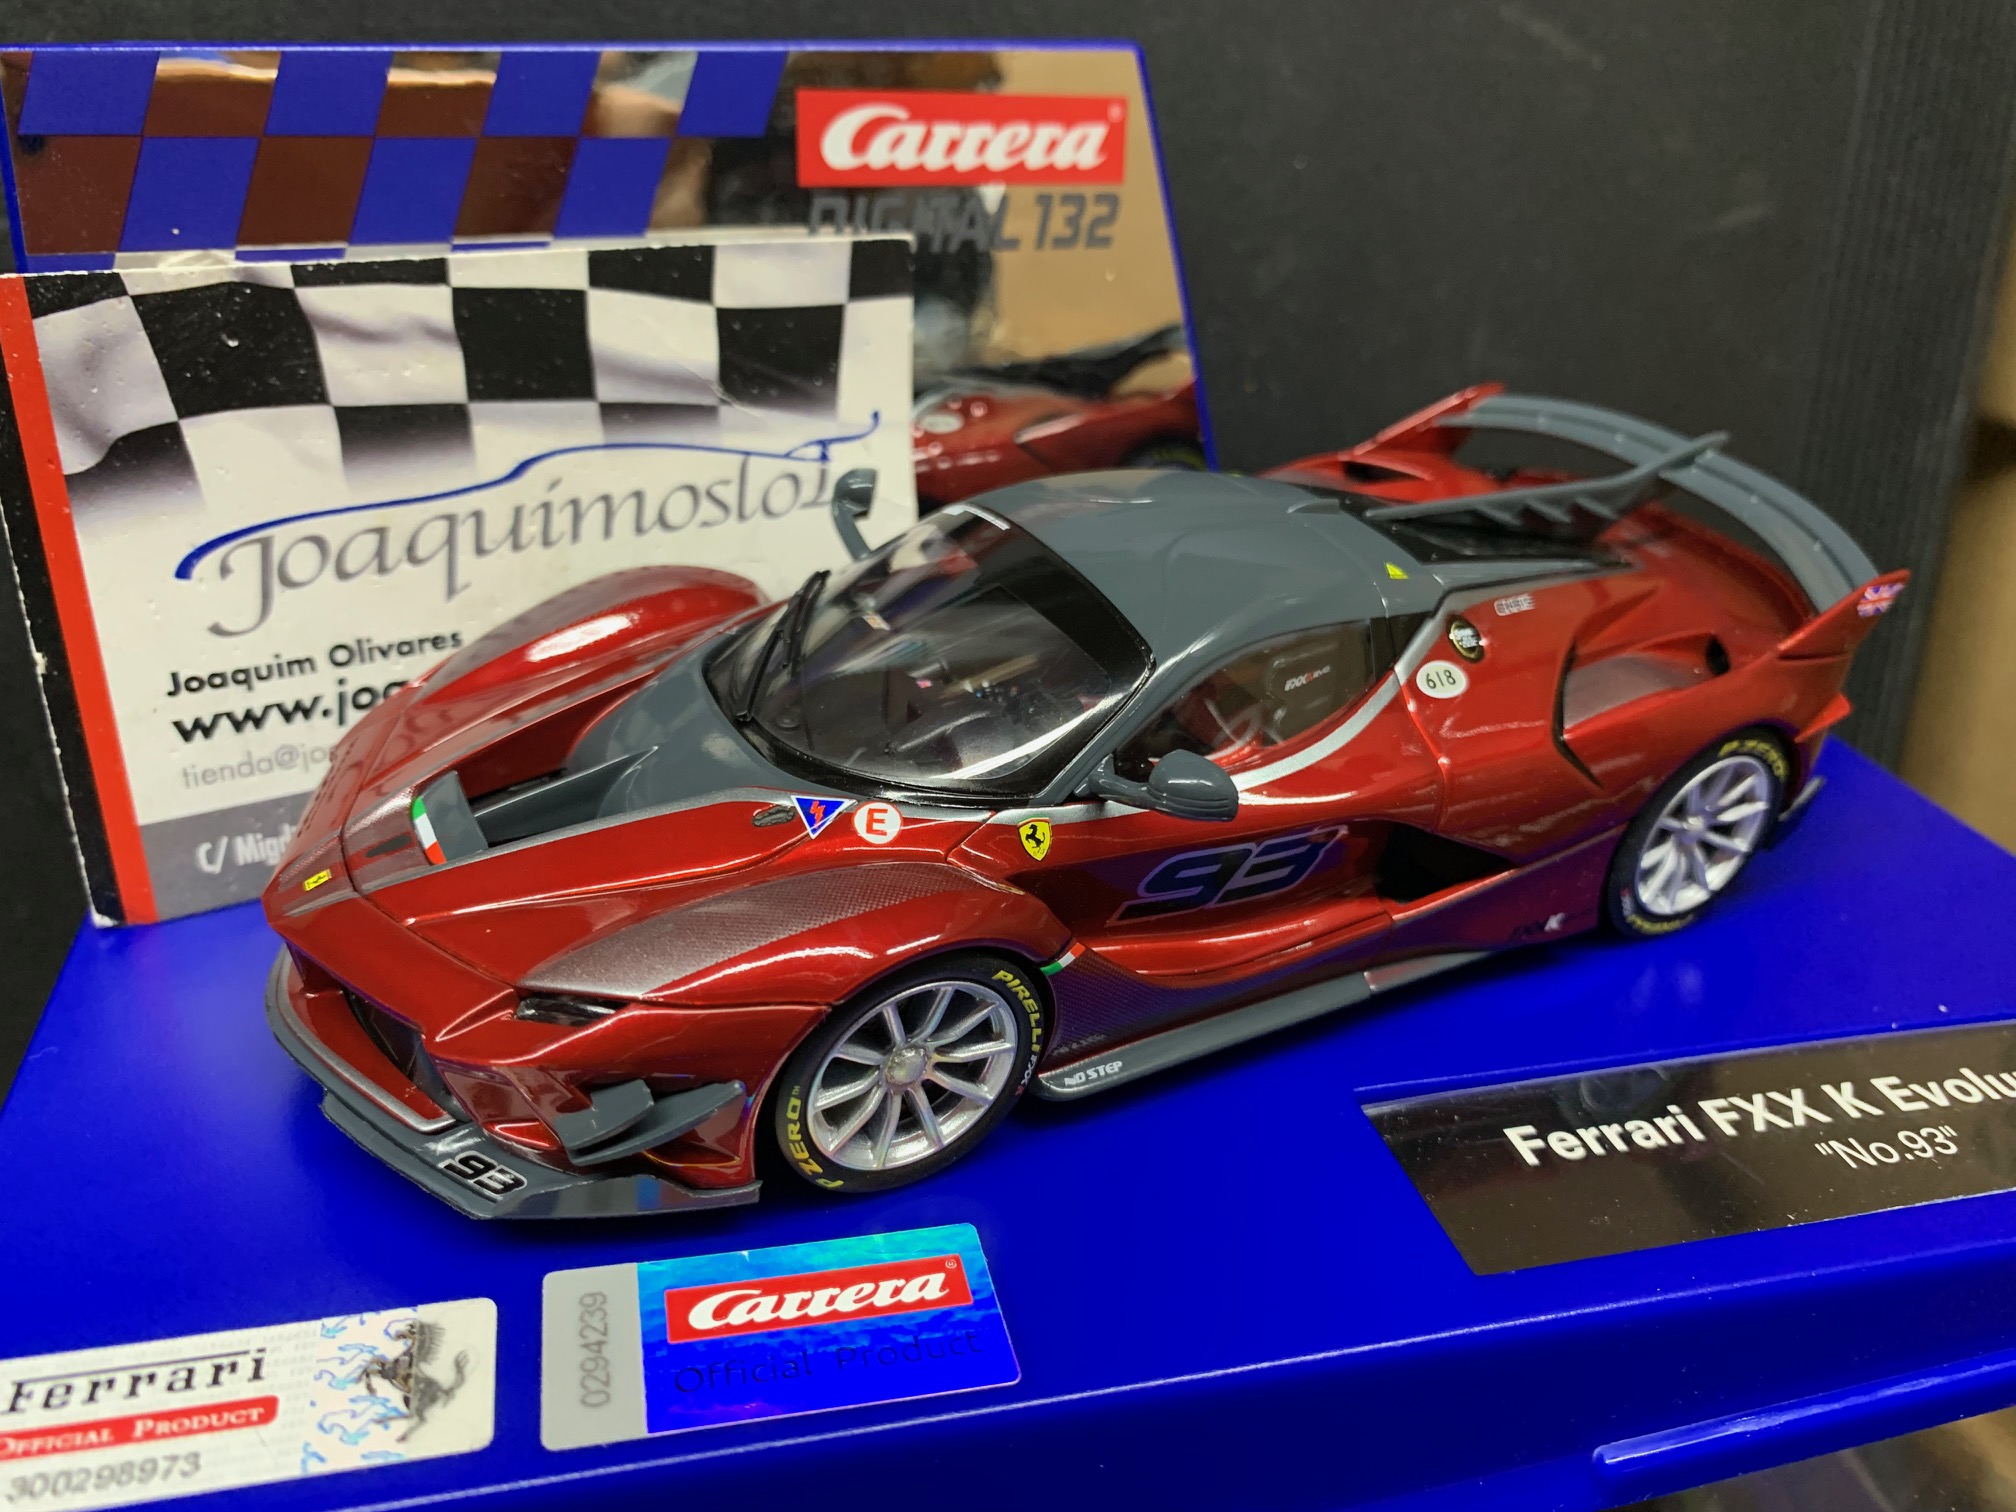 Carrera DIGITAL 132 30971 Ferrari FXX K Evoluzione  [30971] - 49,01€ :  , Comprar, ofertas y descuentos